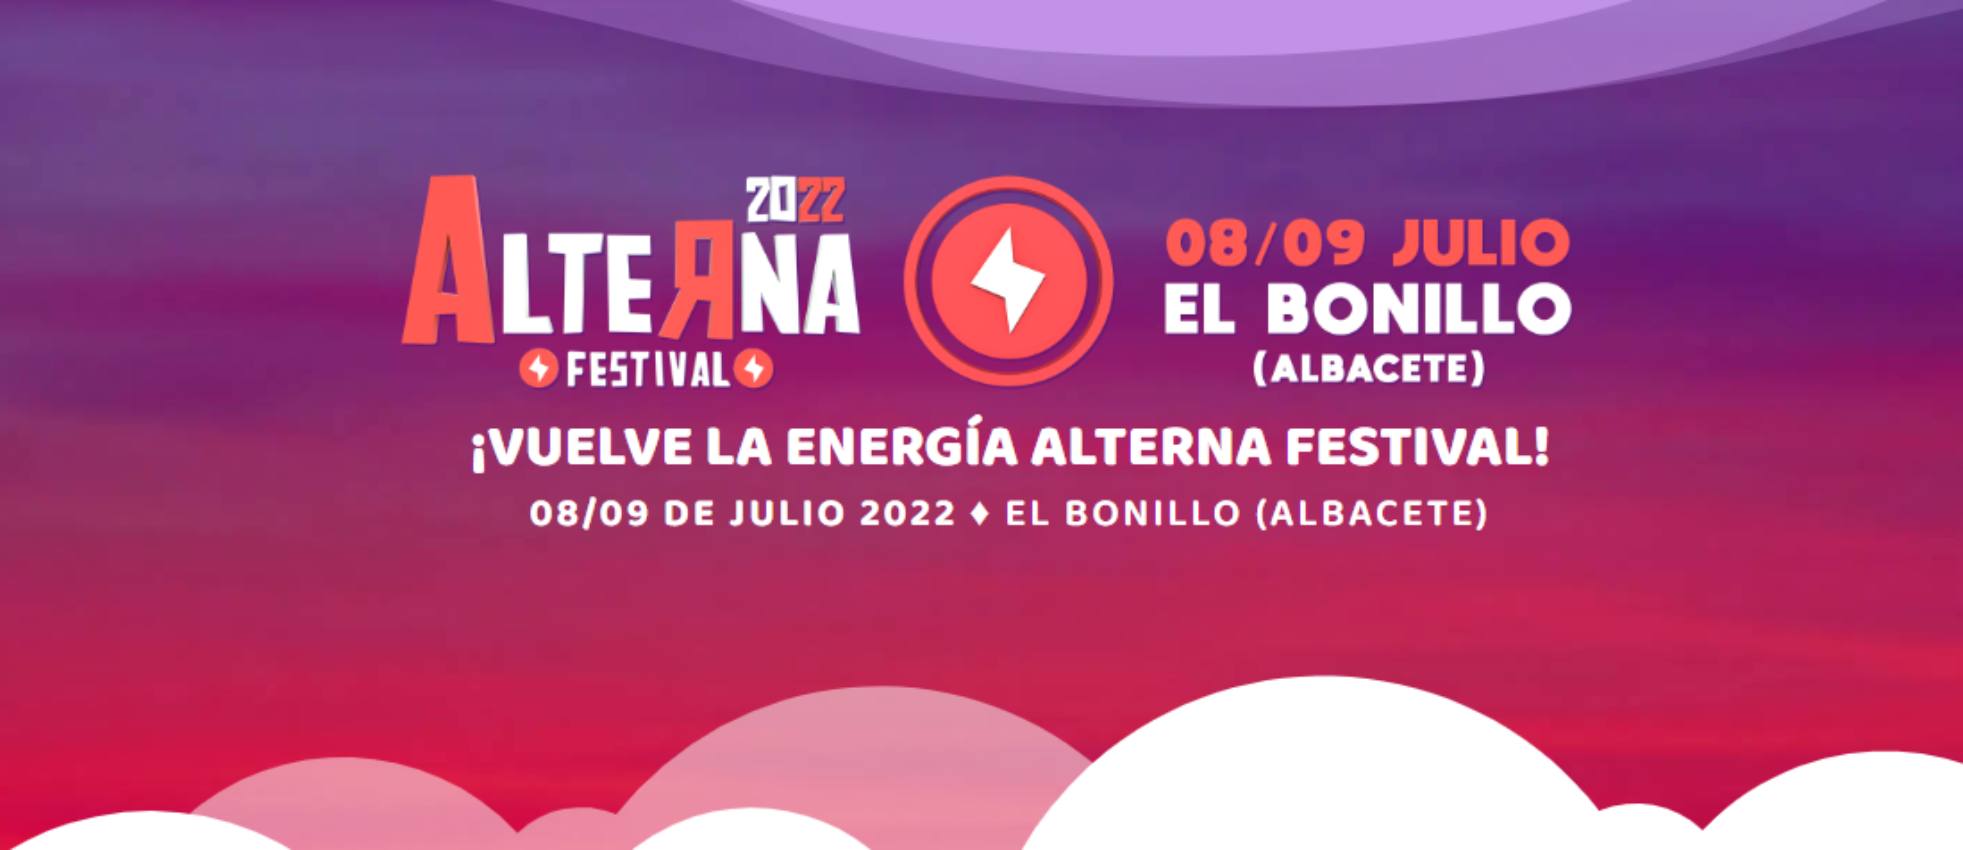 Llega el Alterna Festival a El Bonillo, Albacete.